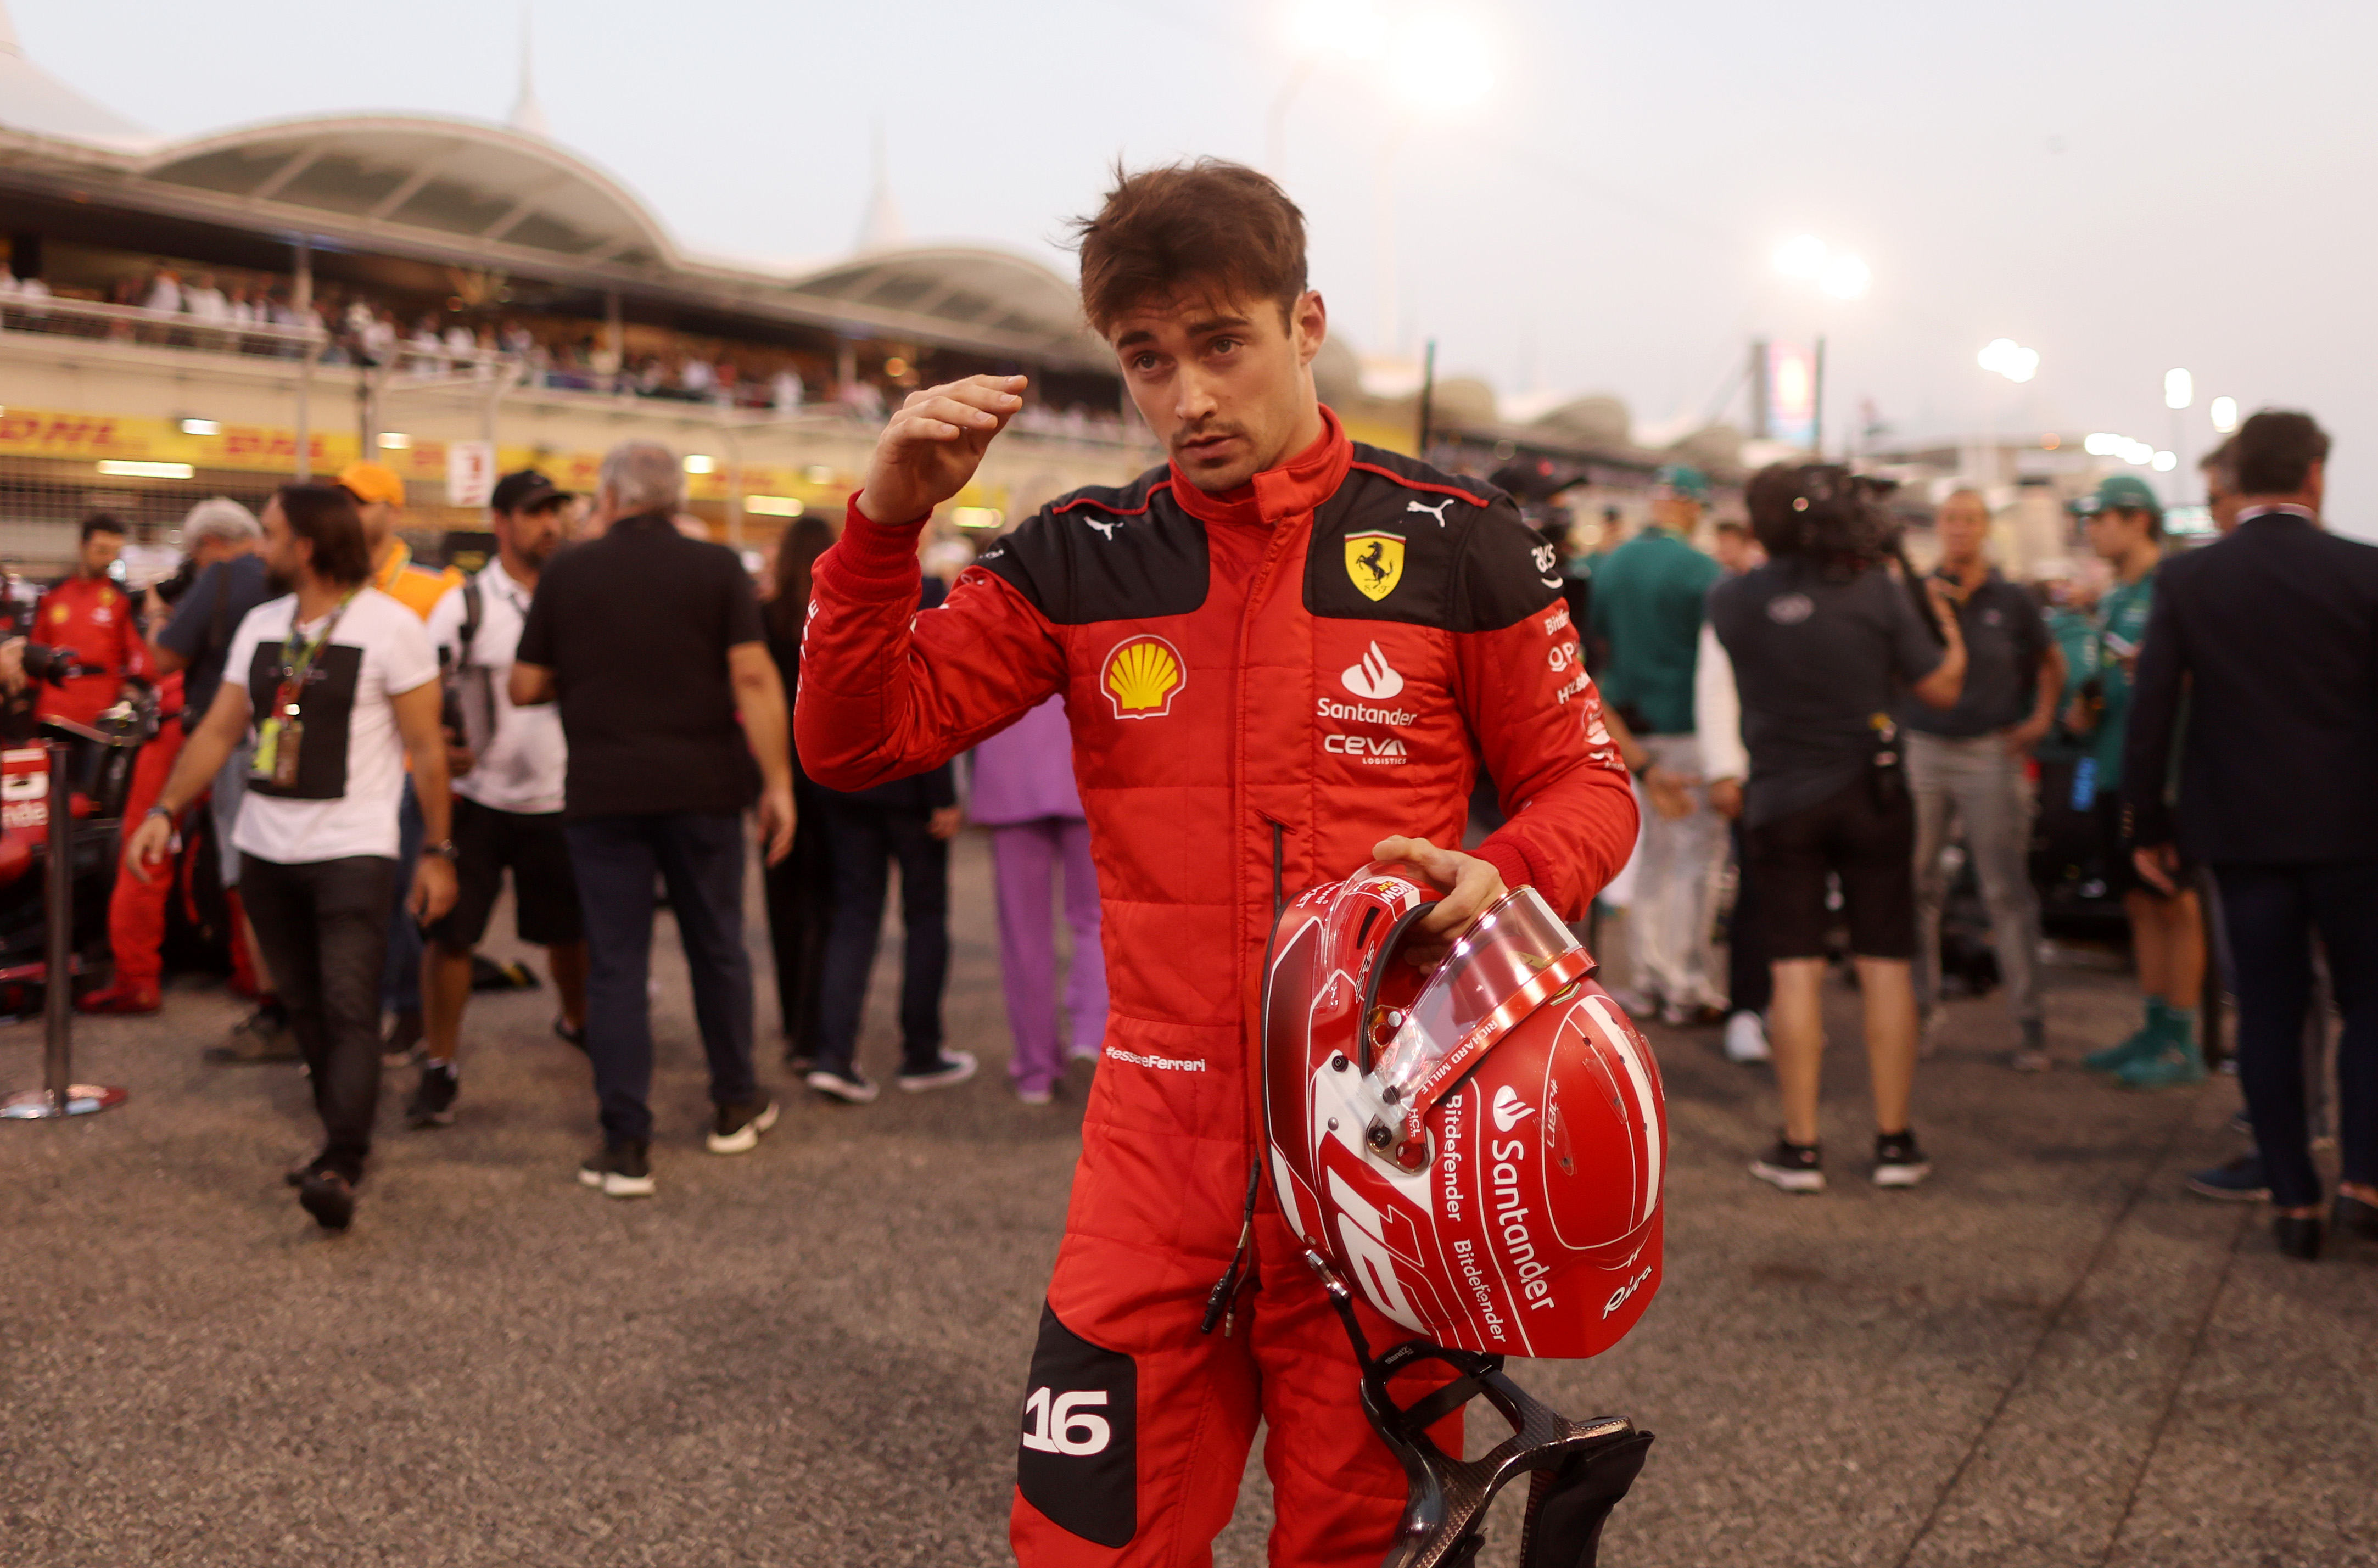 Vești proaste pentru Ferrari. 10 locuri penalizare pentru Charles Leclerc: N-am mai pățit asta